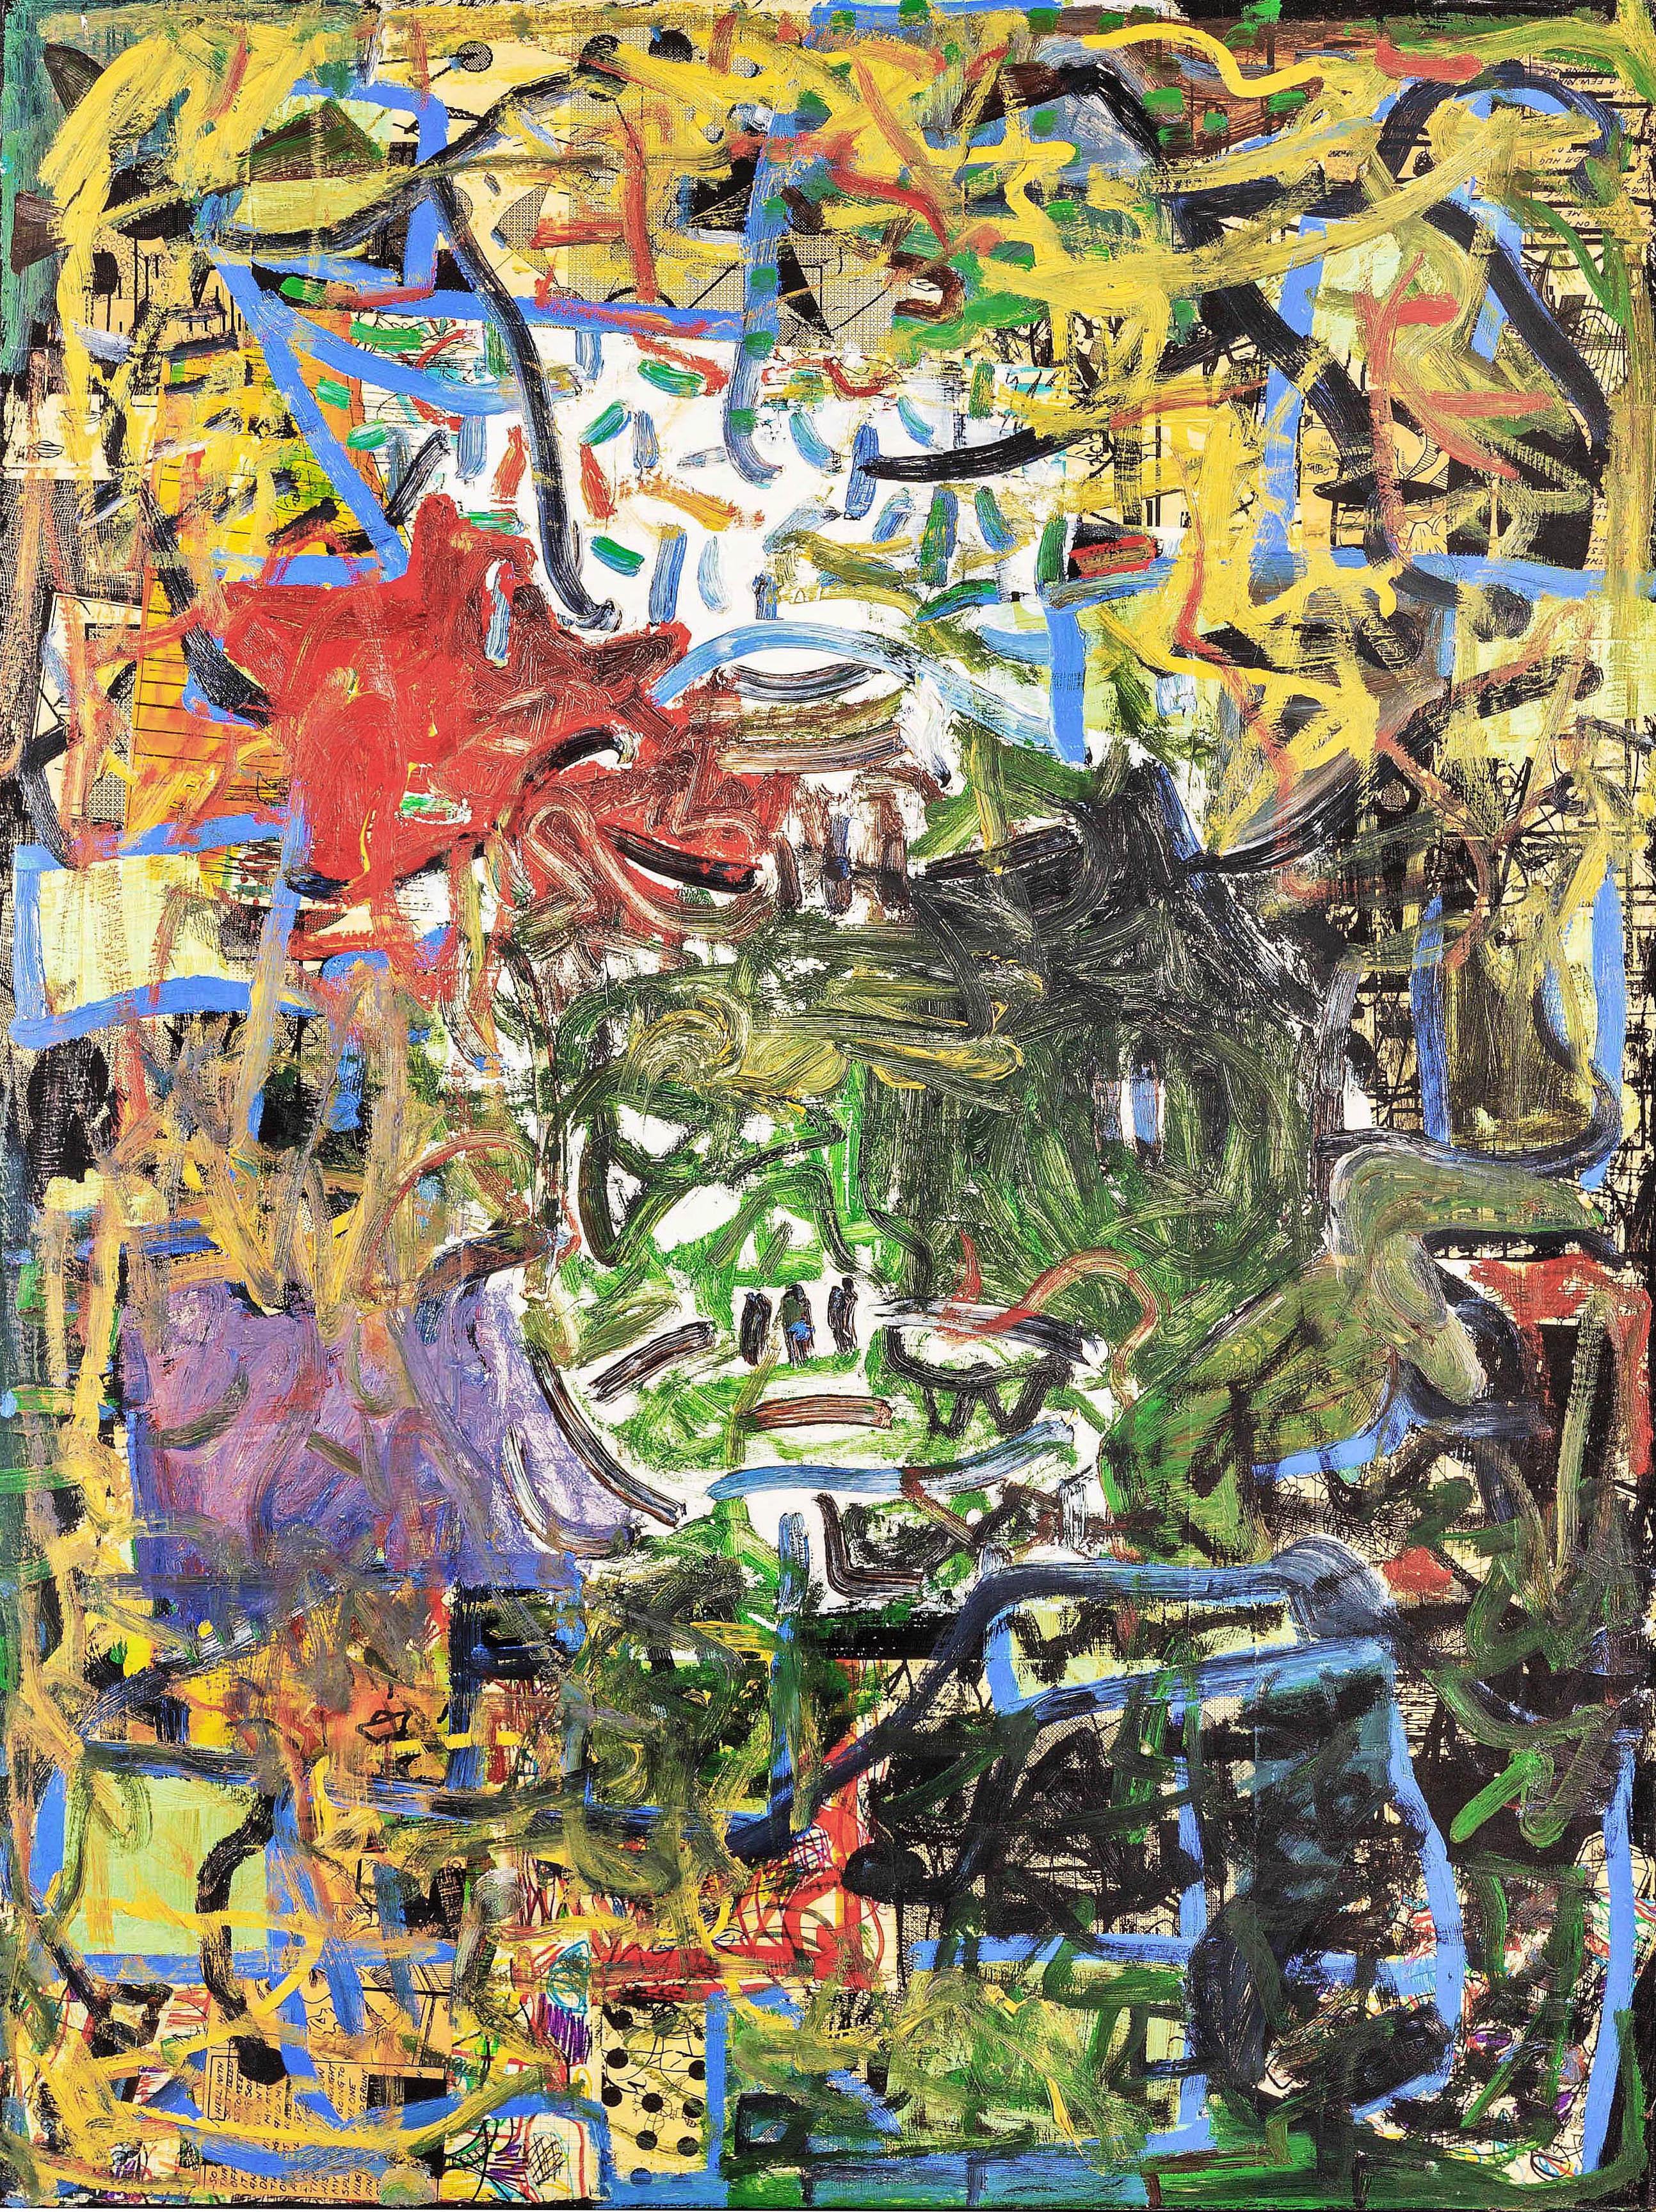 Abstract Painting Dick Wray - « Sans titre », huile, technique mixte sur toile - peinture impressionniste abstraite